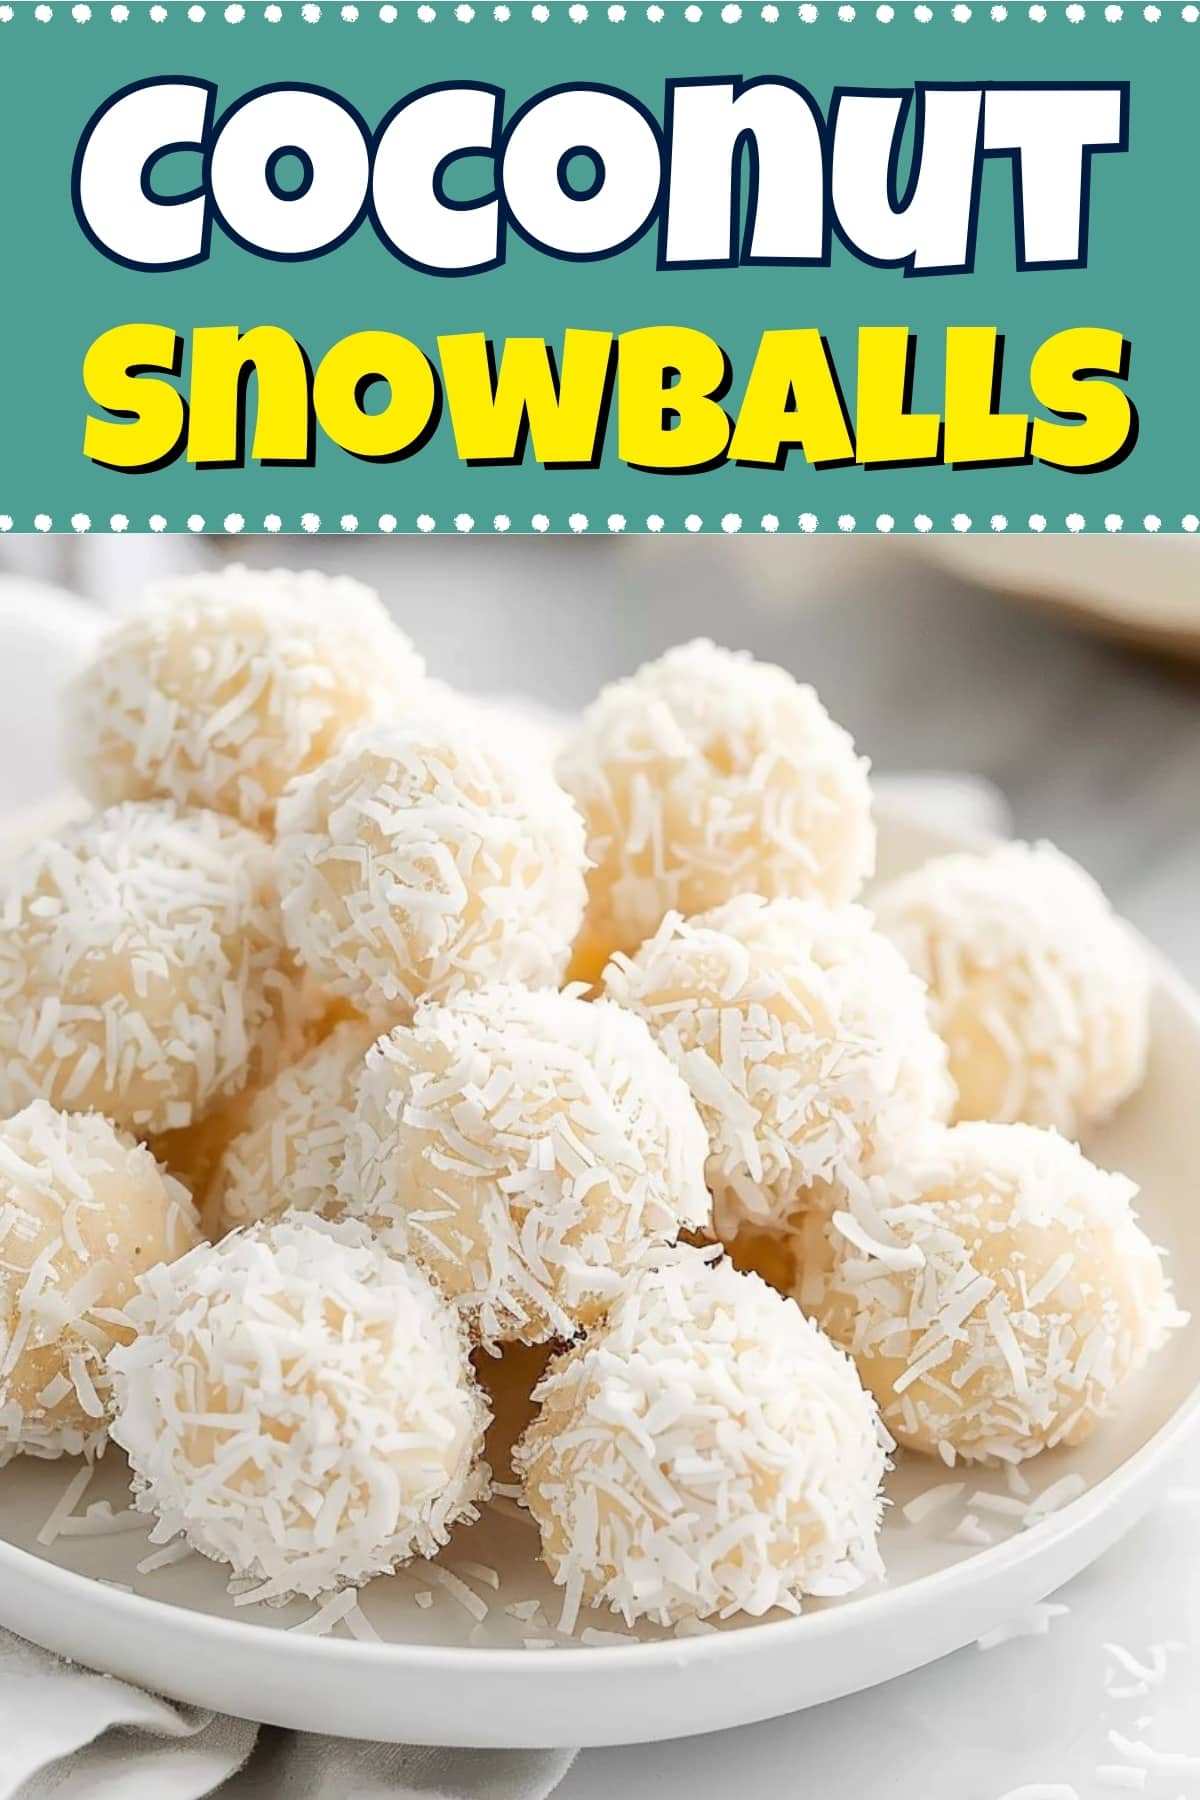 Coconut snowballs.